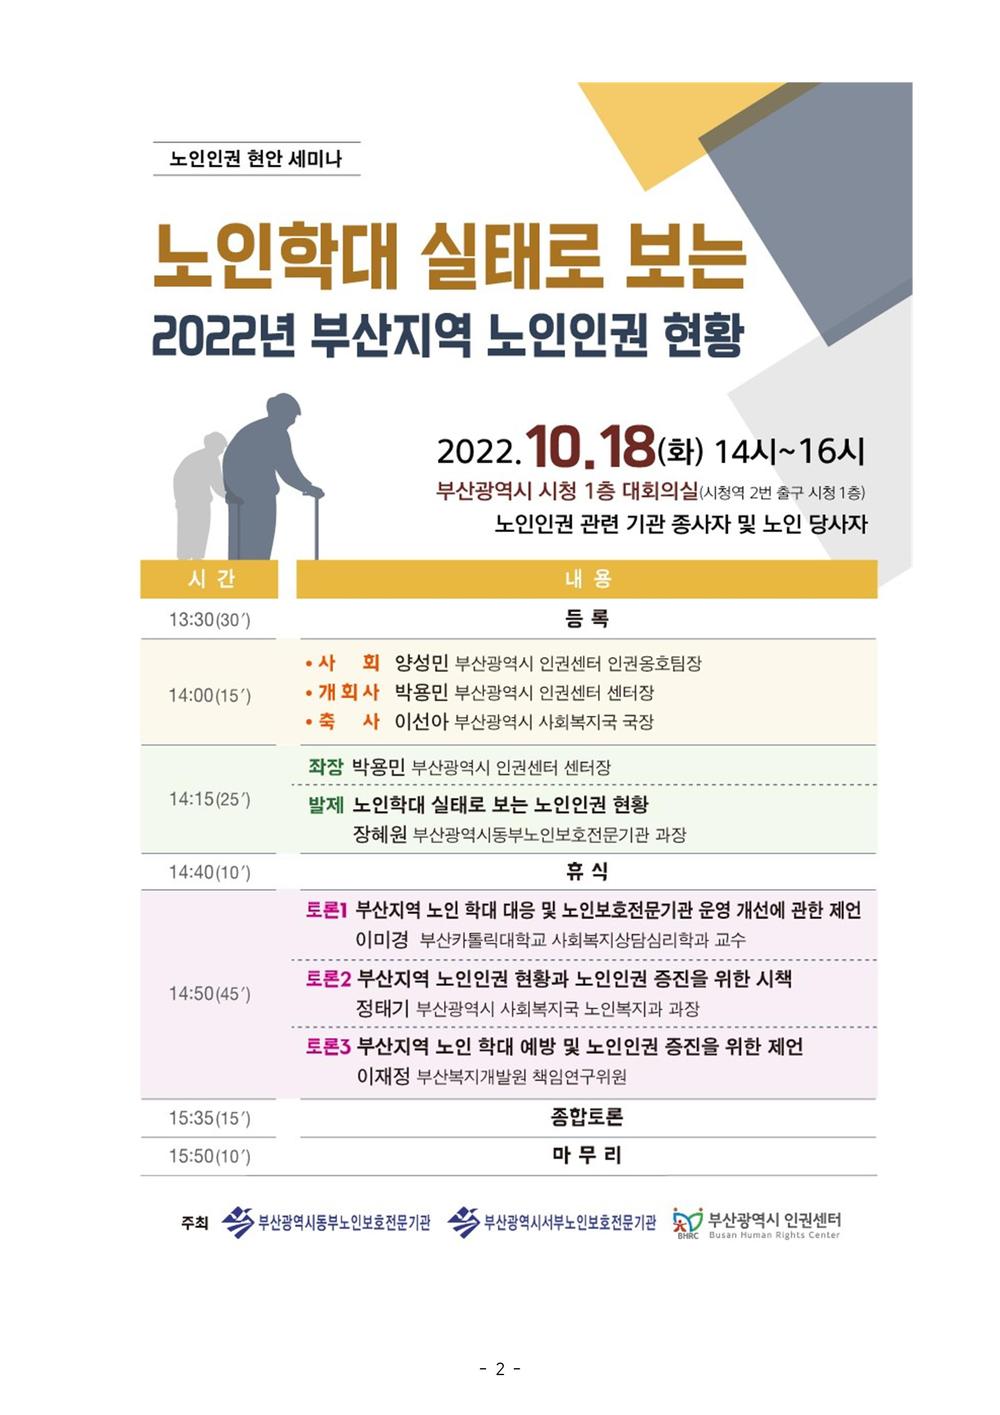 보도22-31호 노인인권 현안 세미나 개최002.jpg